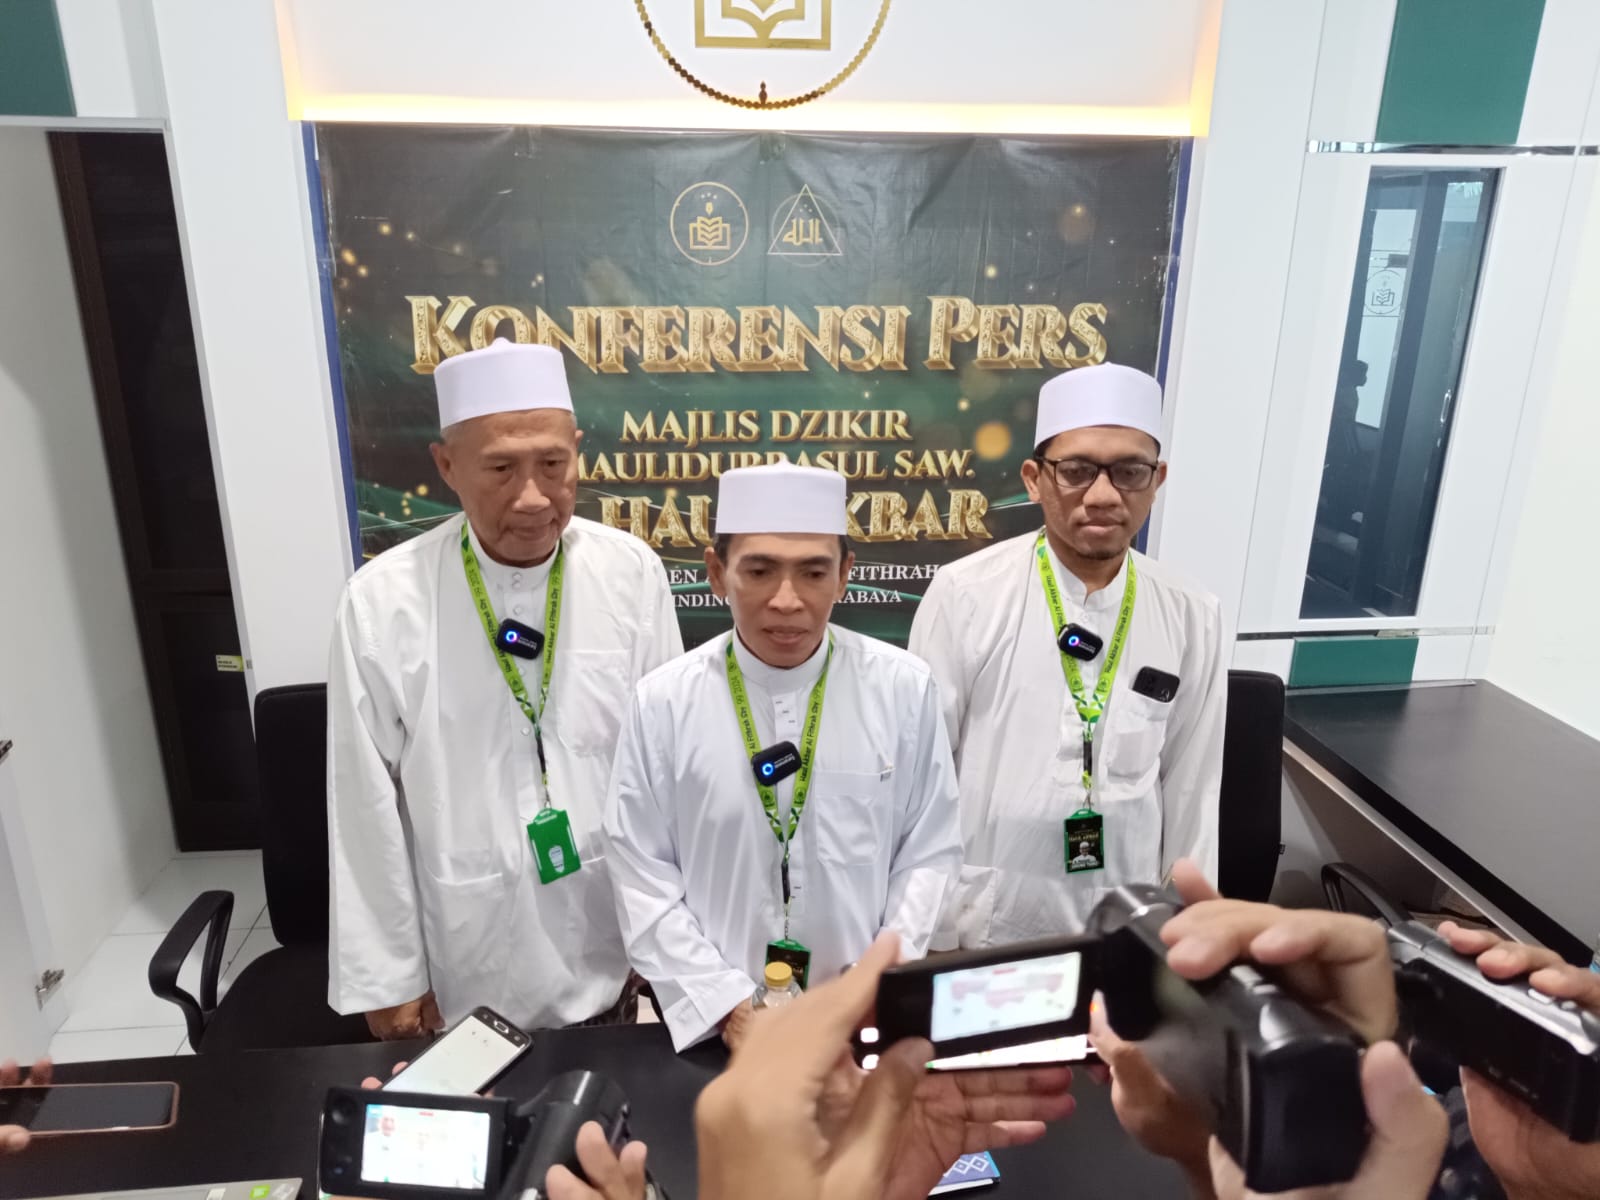 Nasiruddin (tengah) Ketua Panitia Haul Akbar Al-Khidmah bersama Mohammad Uripan (kiri) Ketua Umum PP Al-Khidmah dan Ust Ahmad Kunawi Ketua Ponpes Assalafi Al-Fithrah.